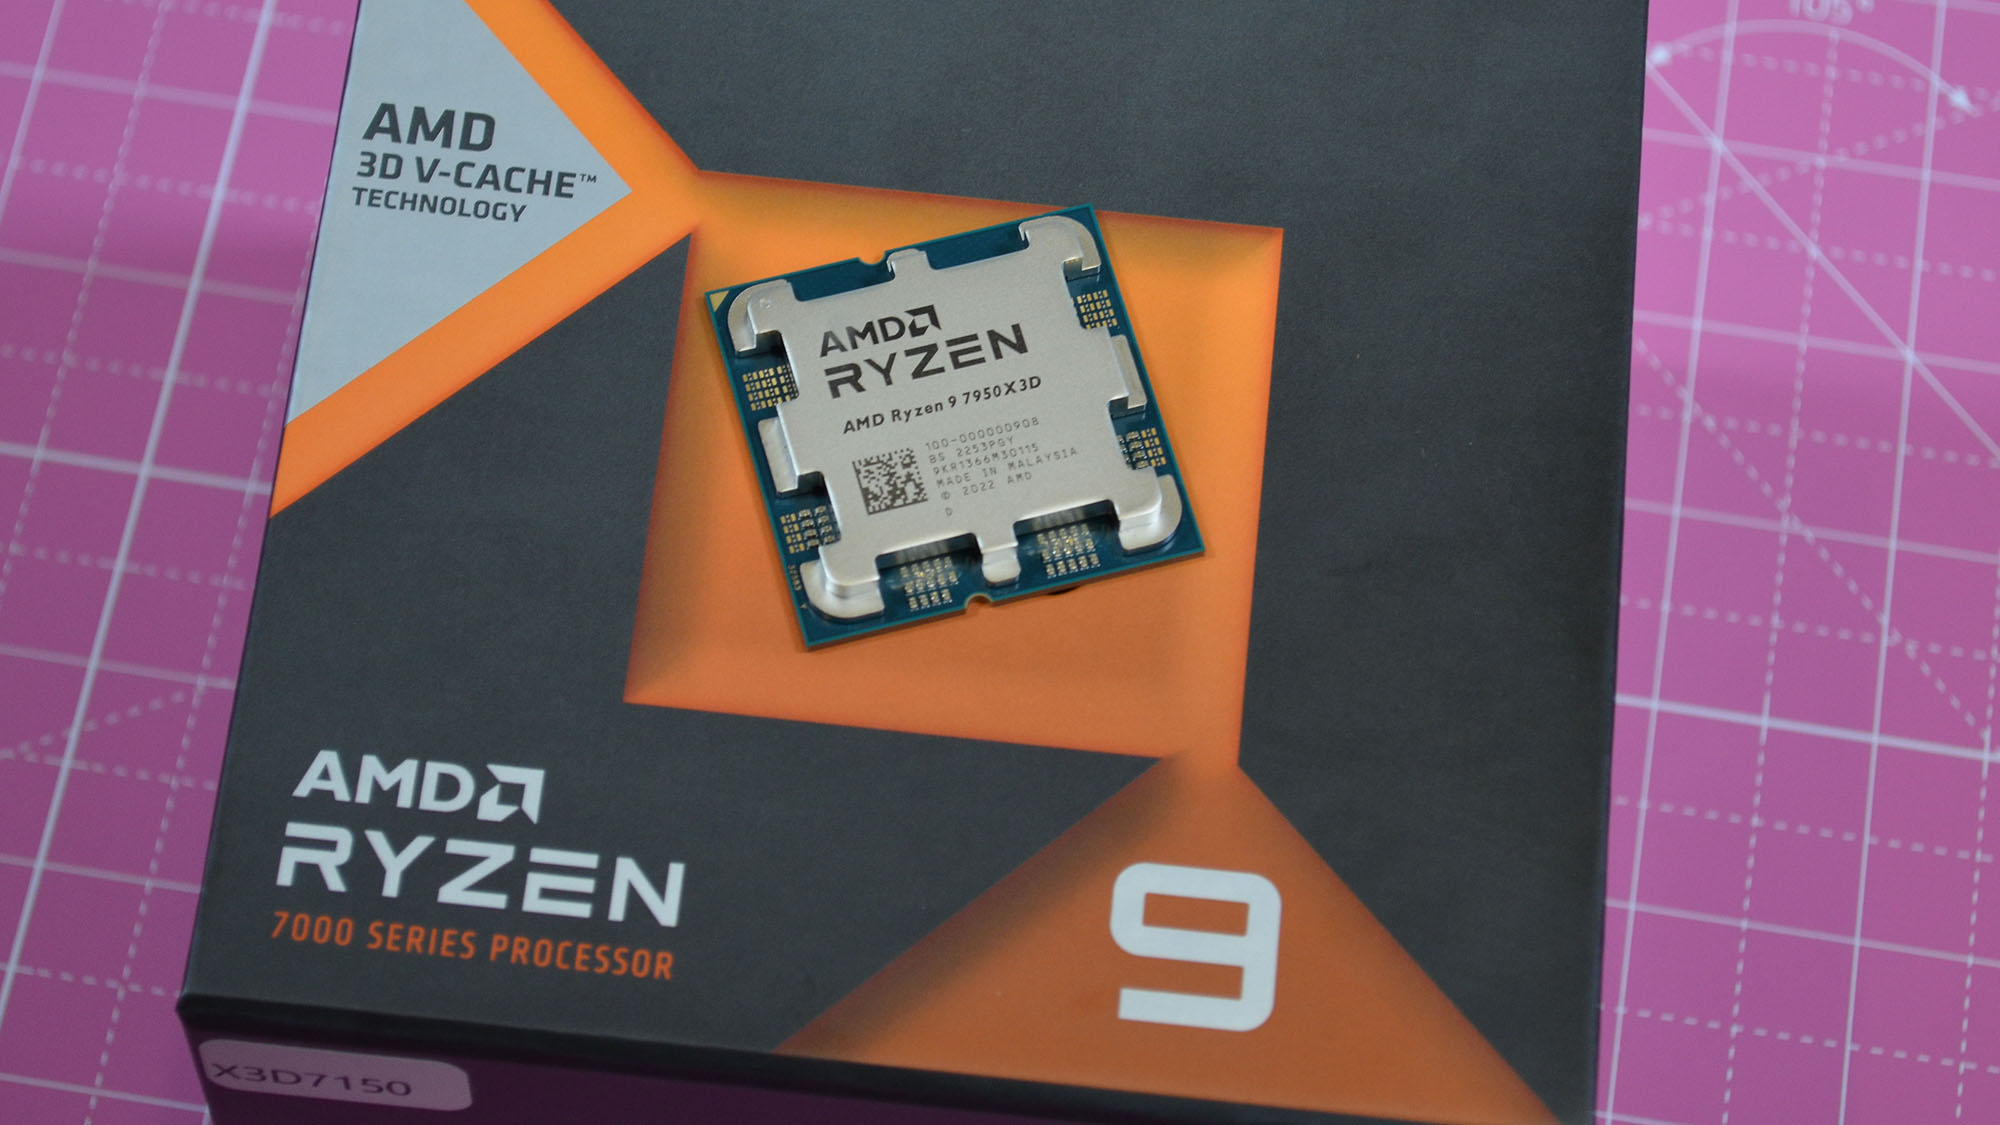 An AMD Ryzen 9 7950X3D on its retail packaging